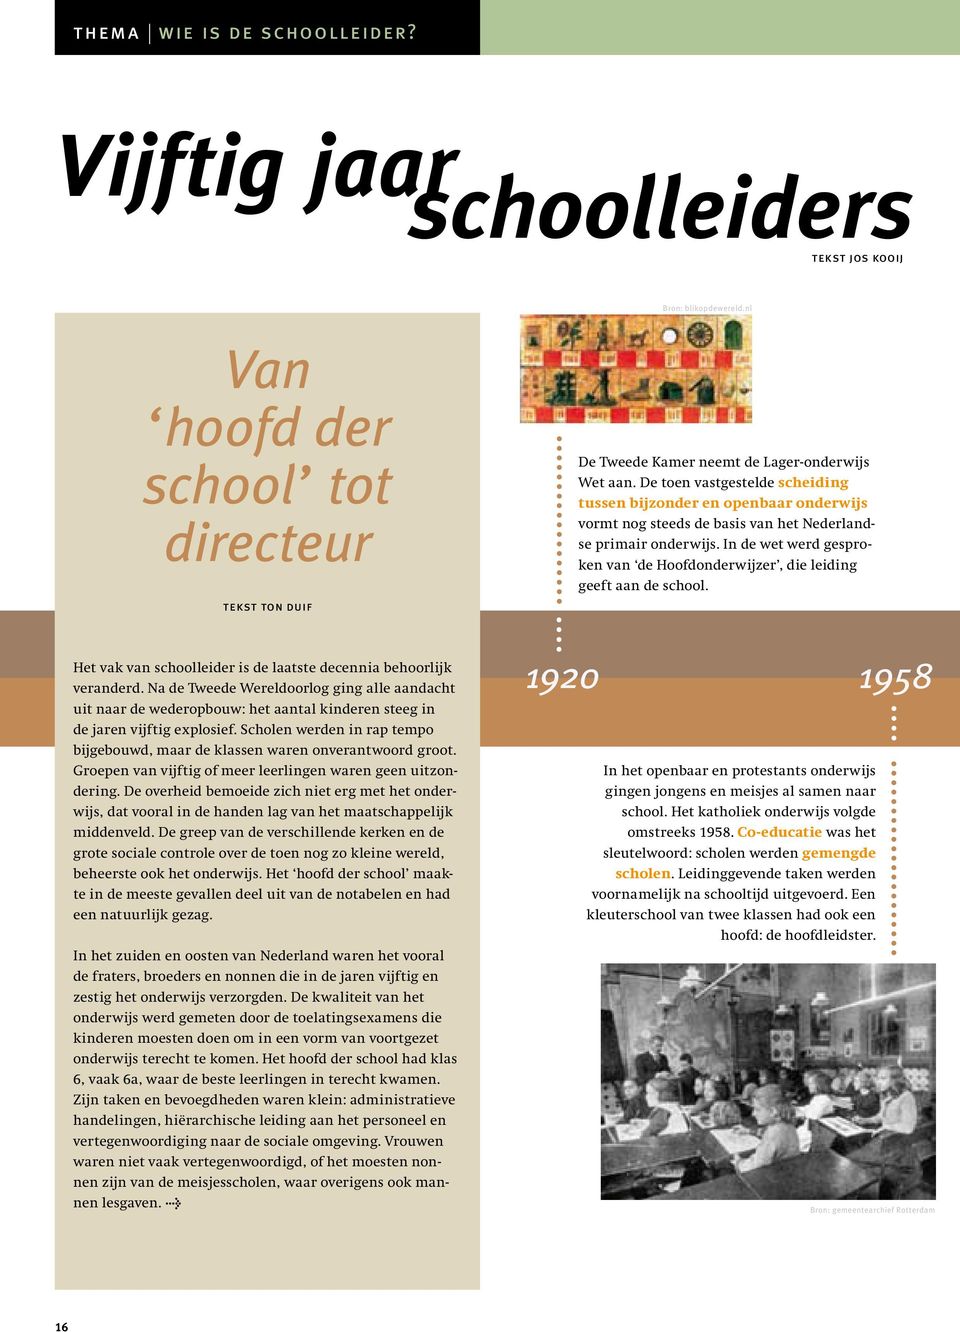 In de wet werd gesproken van de Hoofdonderwijzer, die leiding geeft aan de school. Het vak van schoolleider is de laatste decennia behoorlijk veranderd.